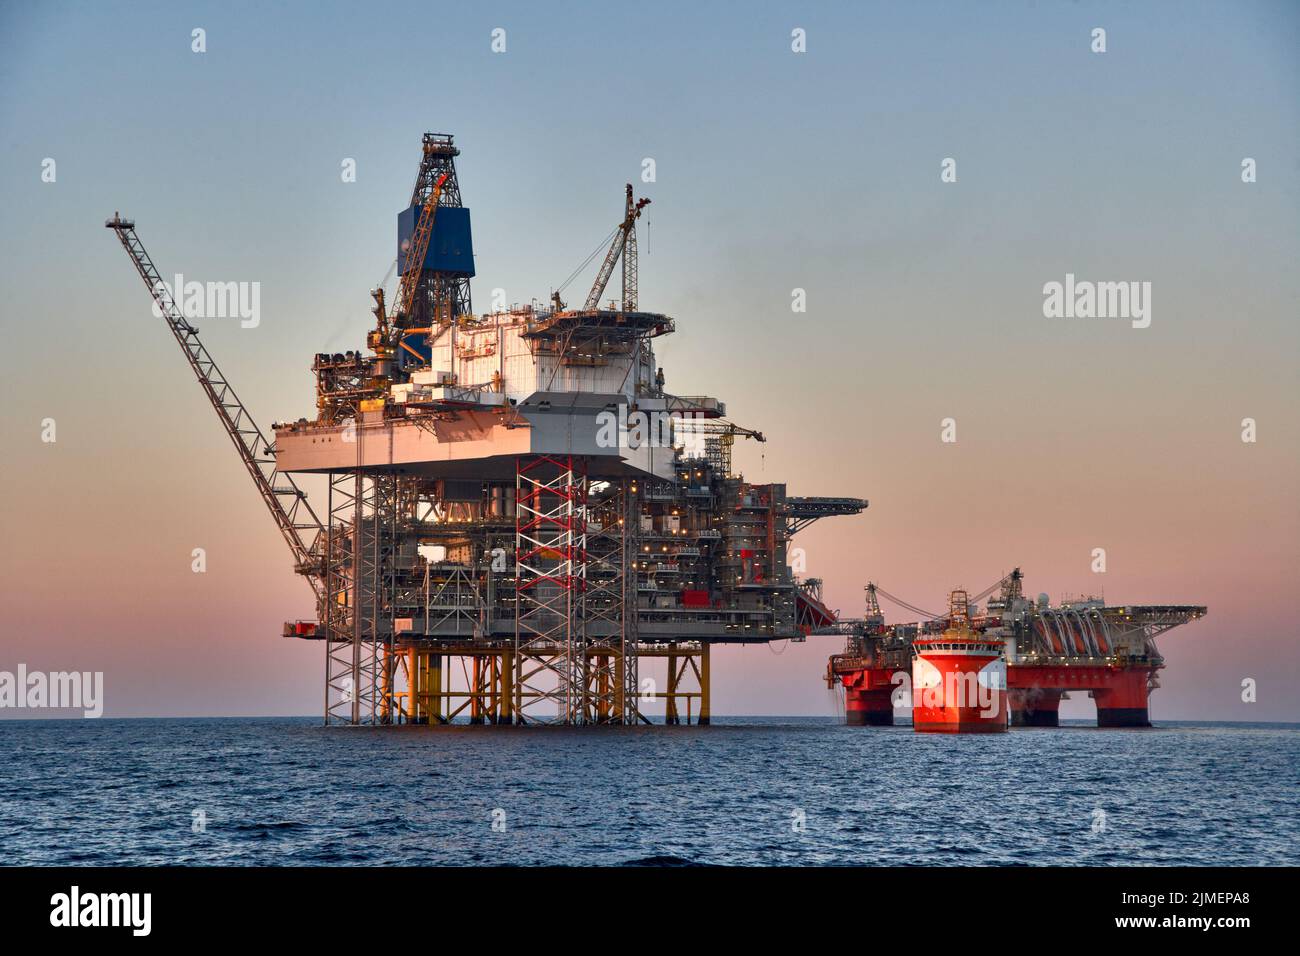 Blick auf die Offshore-Öl- und Gasanlage an einem sonnigen Tag auf See. Aufbocken, Halb-U-Boote, Rohölförderung im Ozean. Stockfoto